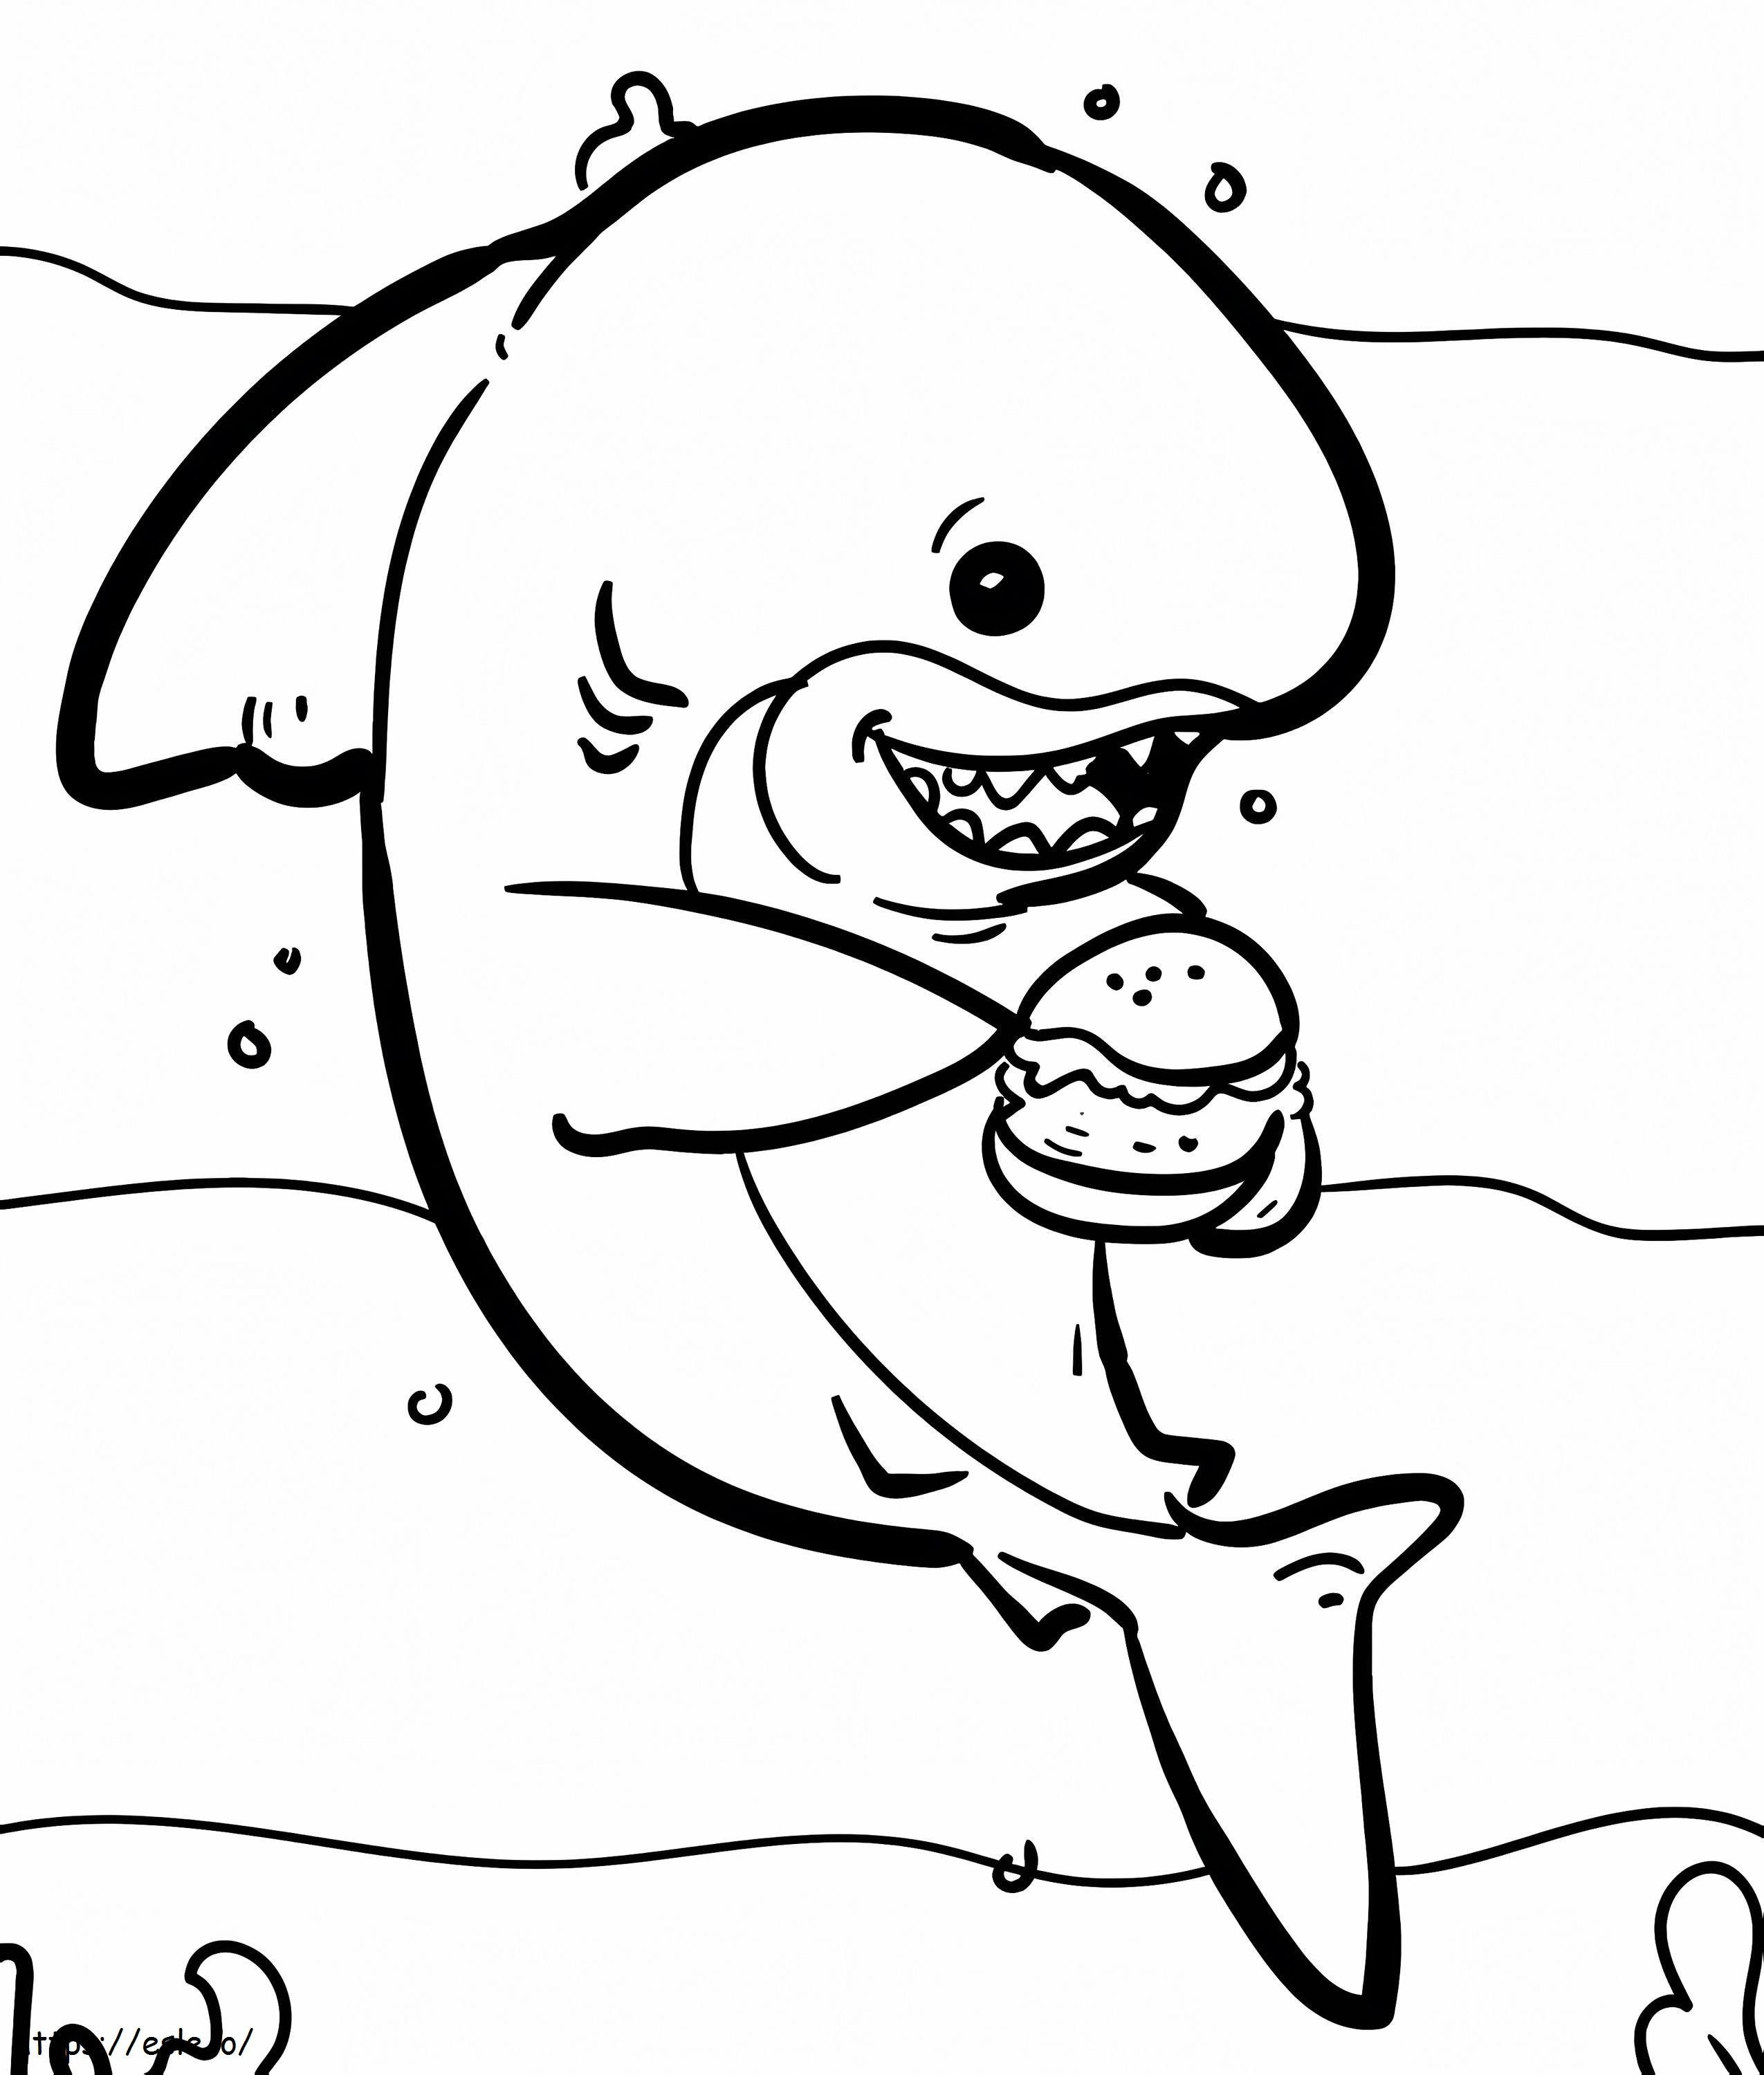 Shark With Hamburger coloring page